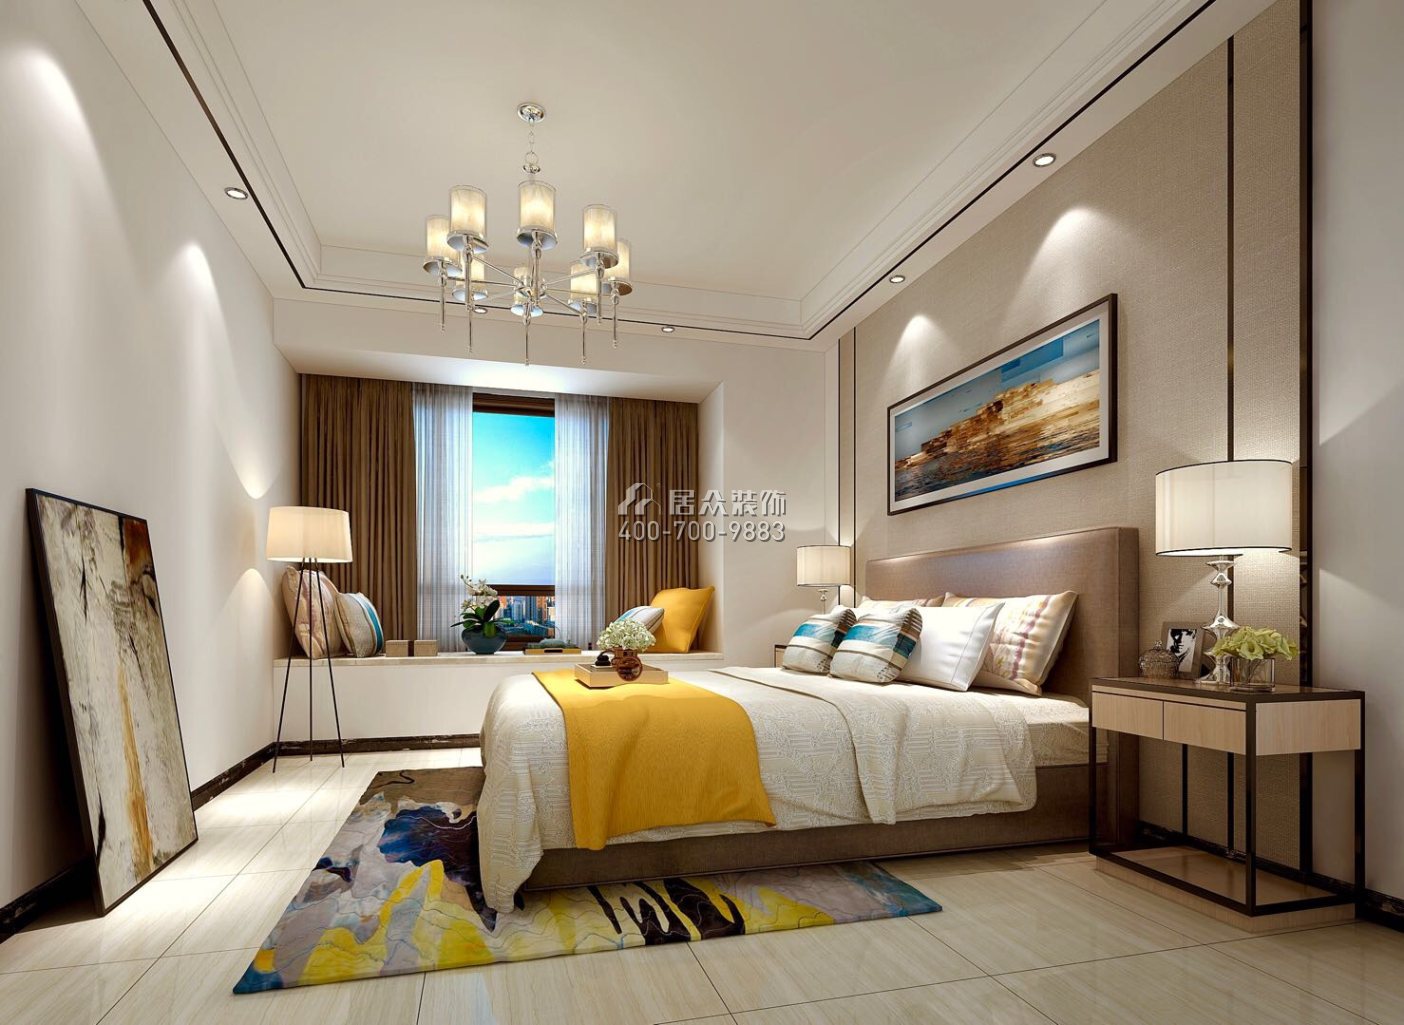 中洲天御花园二期135平方米现代简约风格平层户型卧室装修效果图